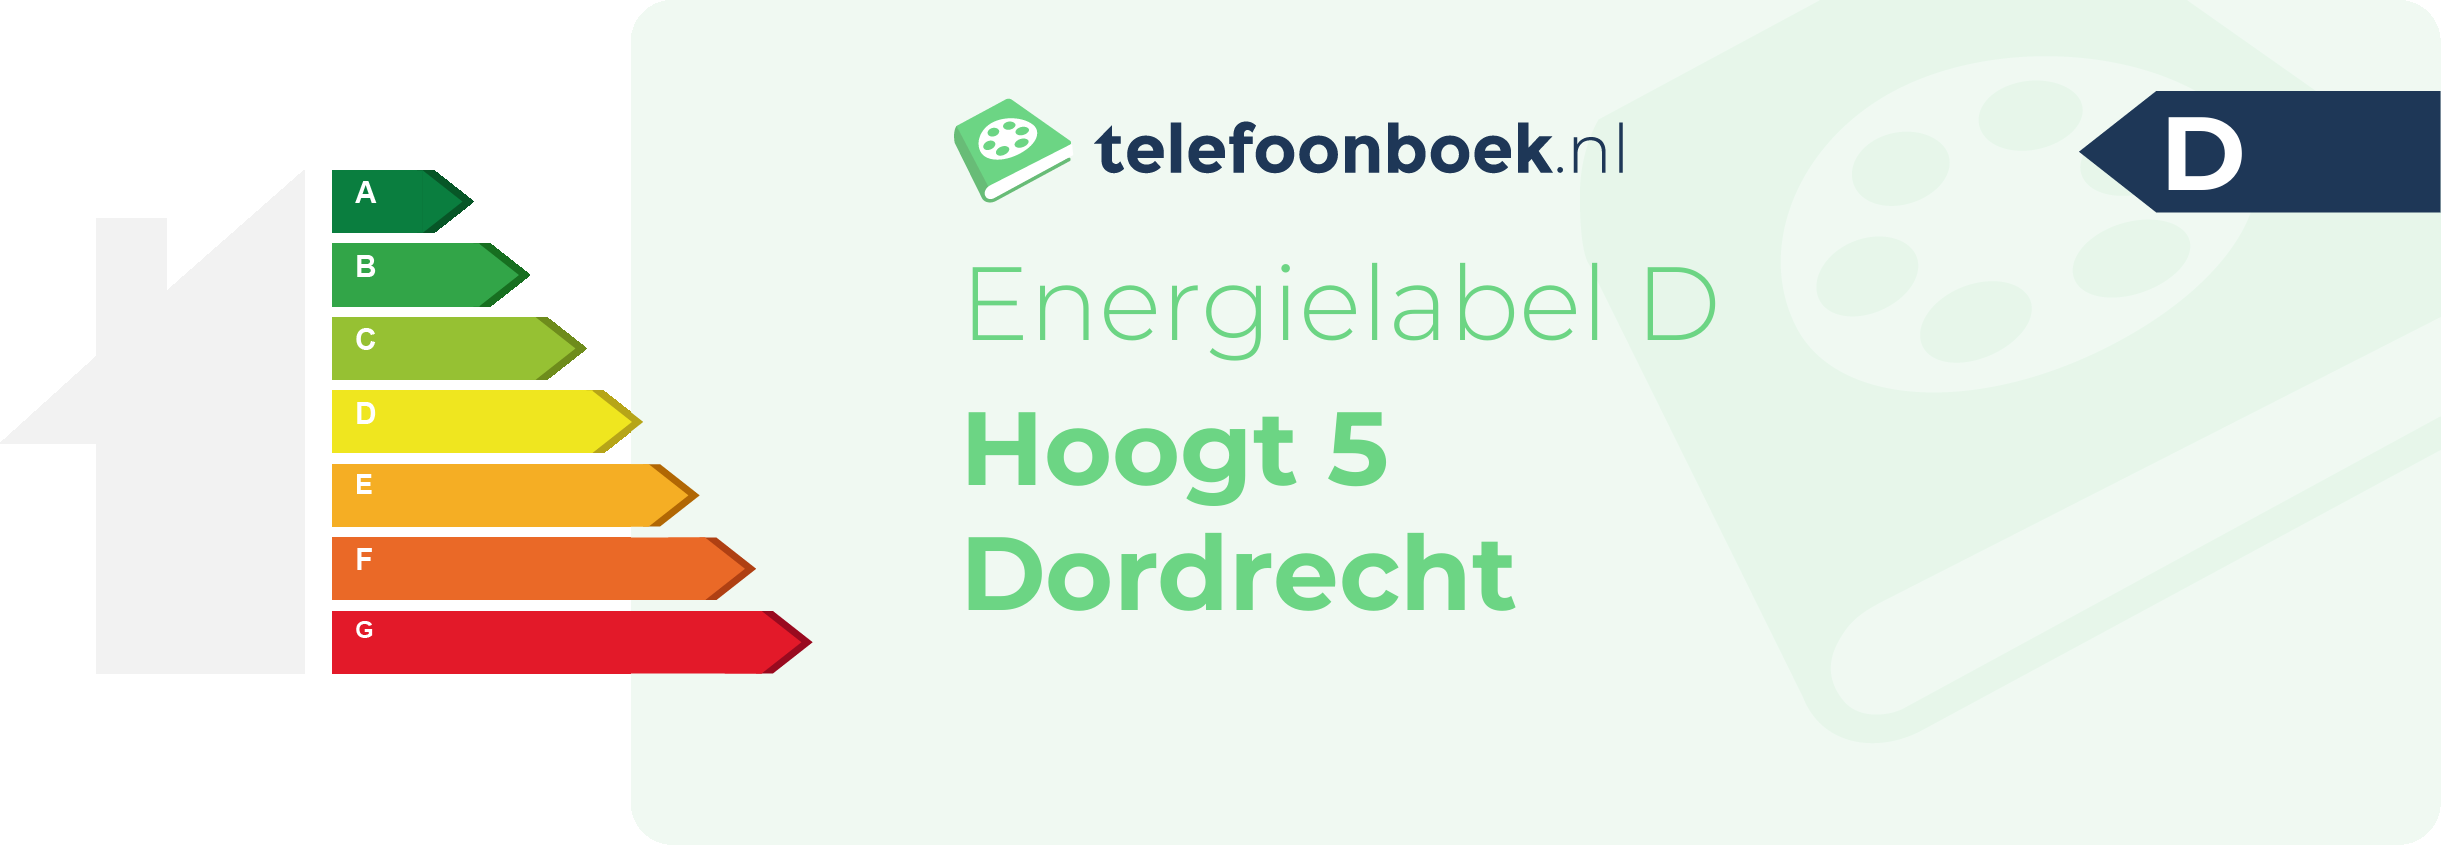 Energielabel Hoogt 5 Dordrecht